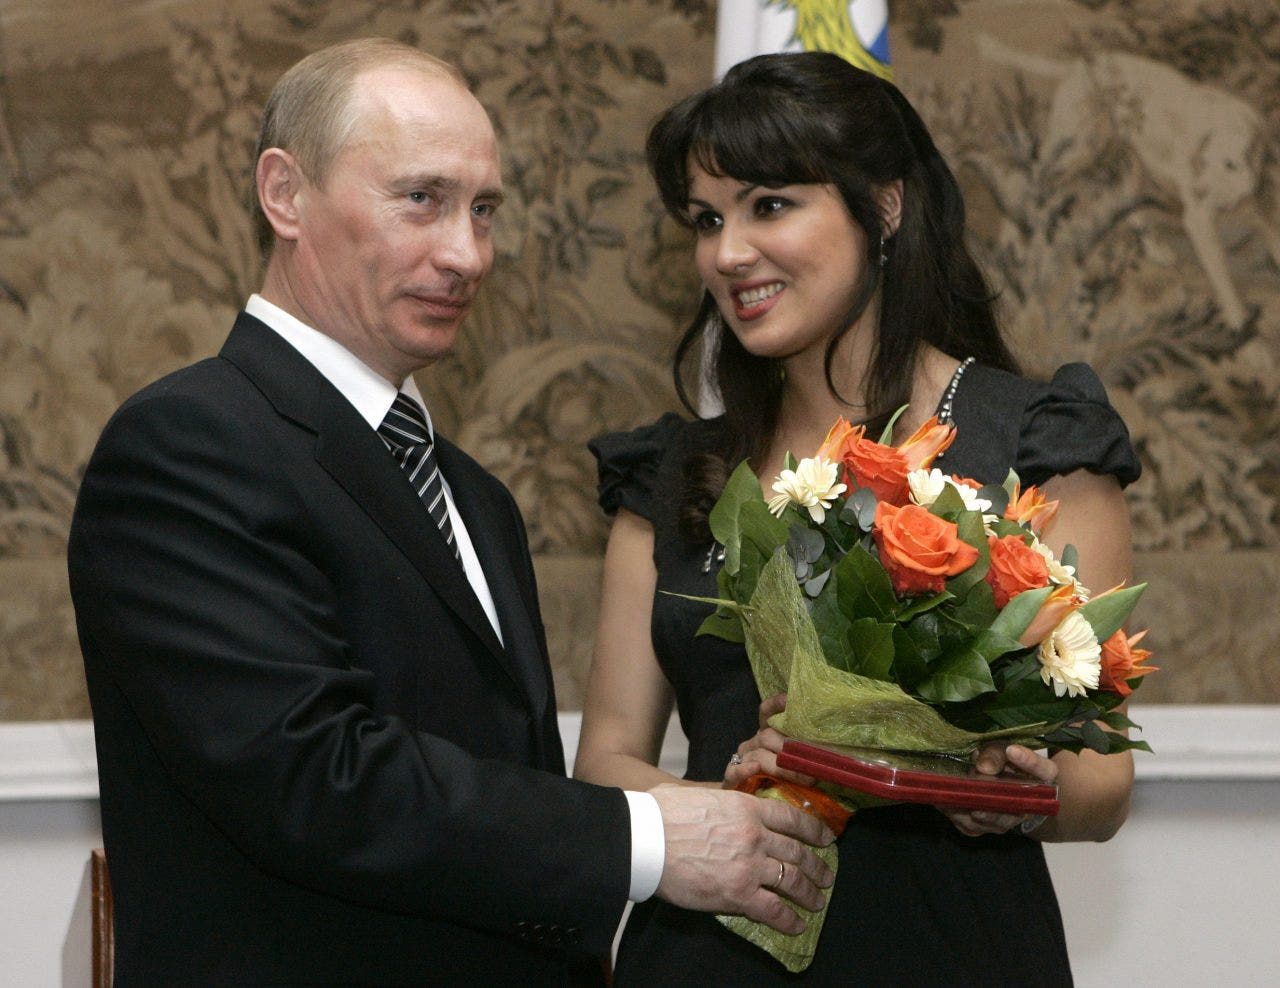 Russian opera singer and Putin – Met cancels artist, attacks free speech